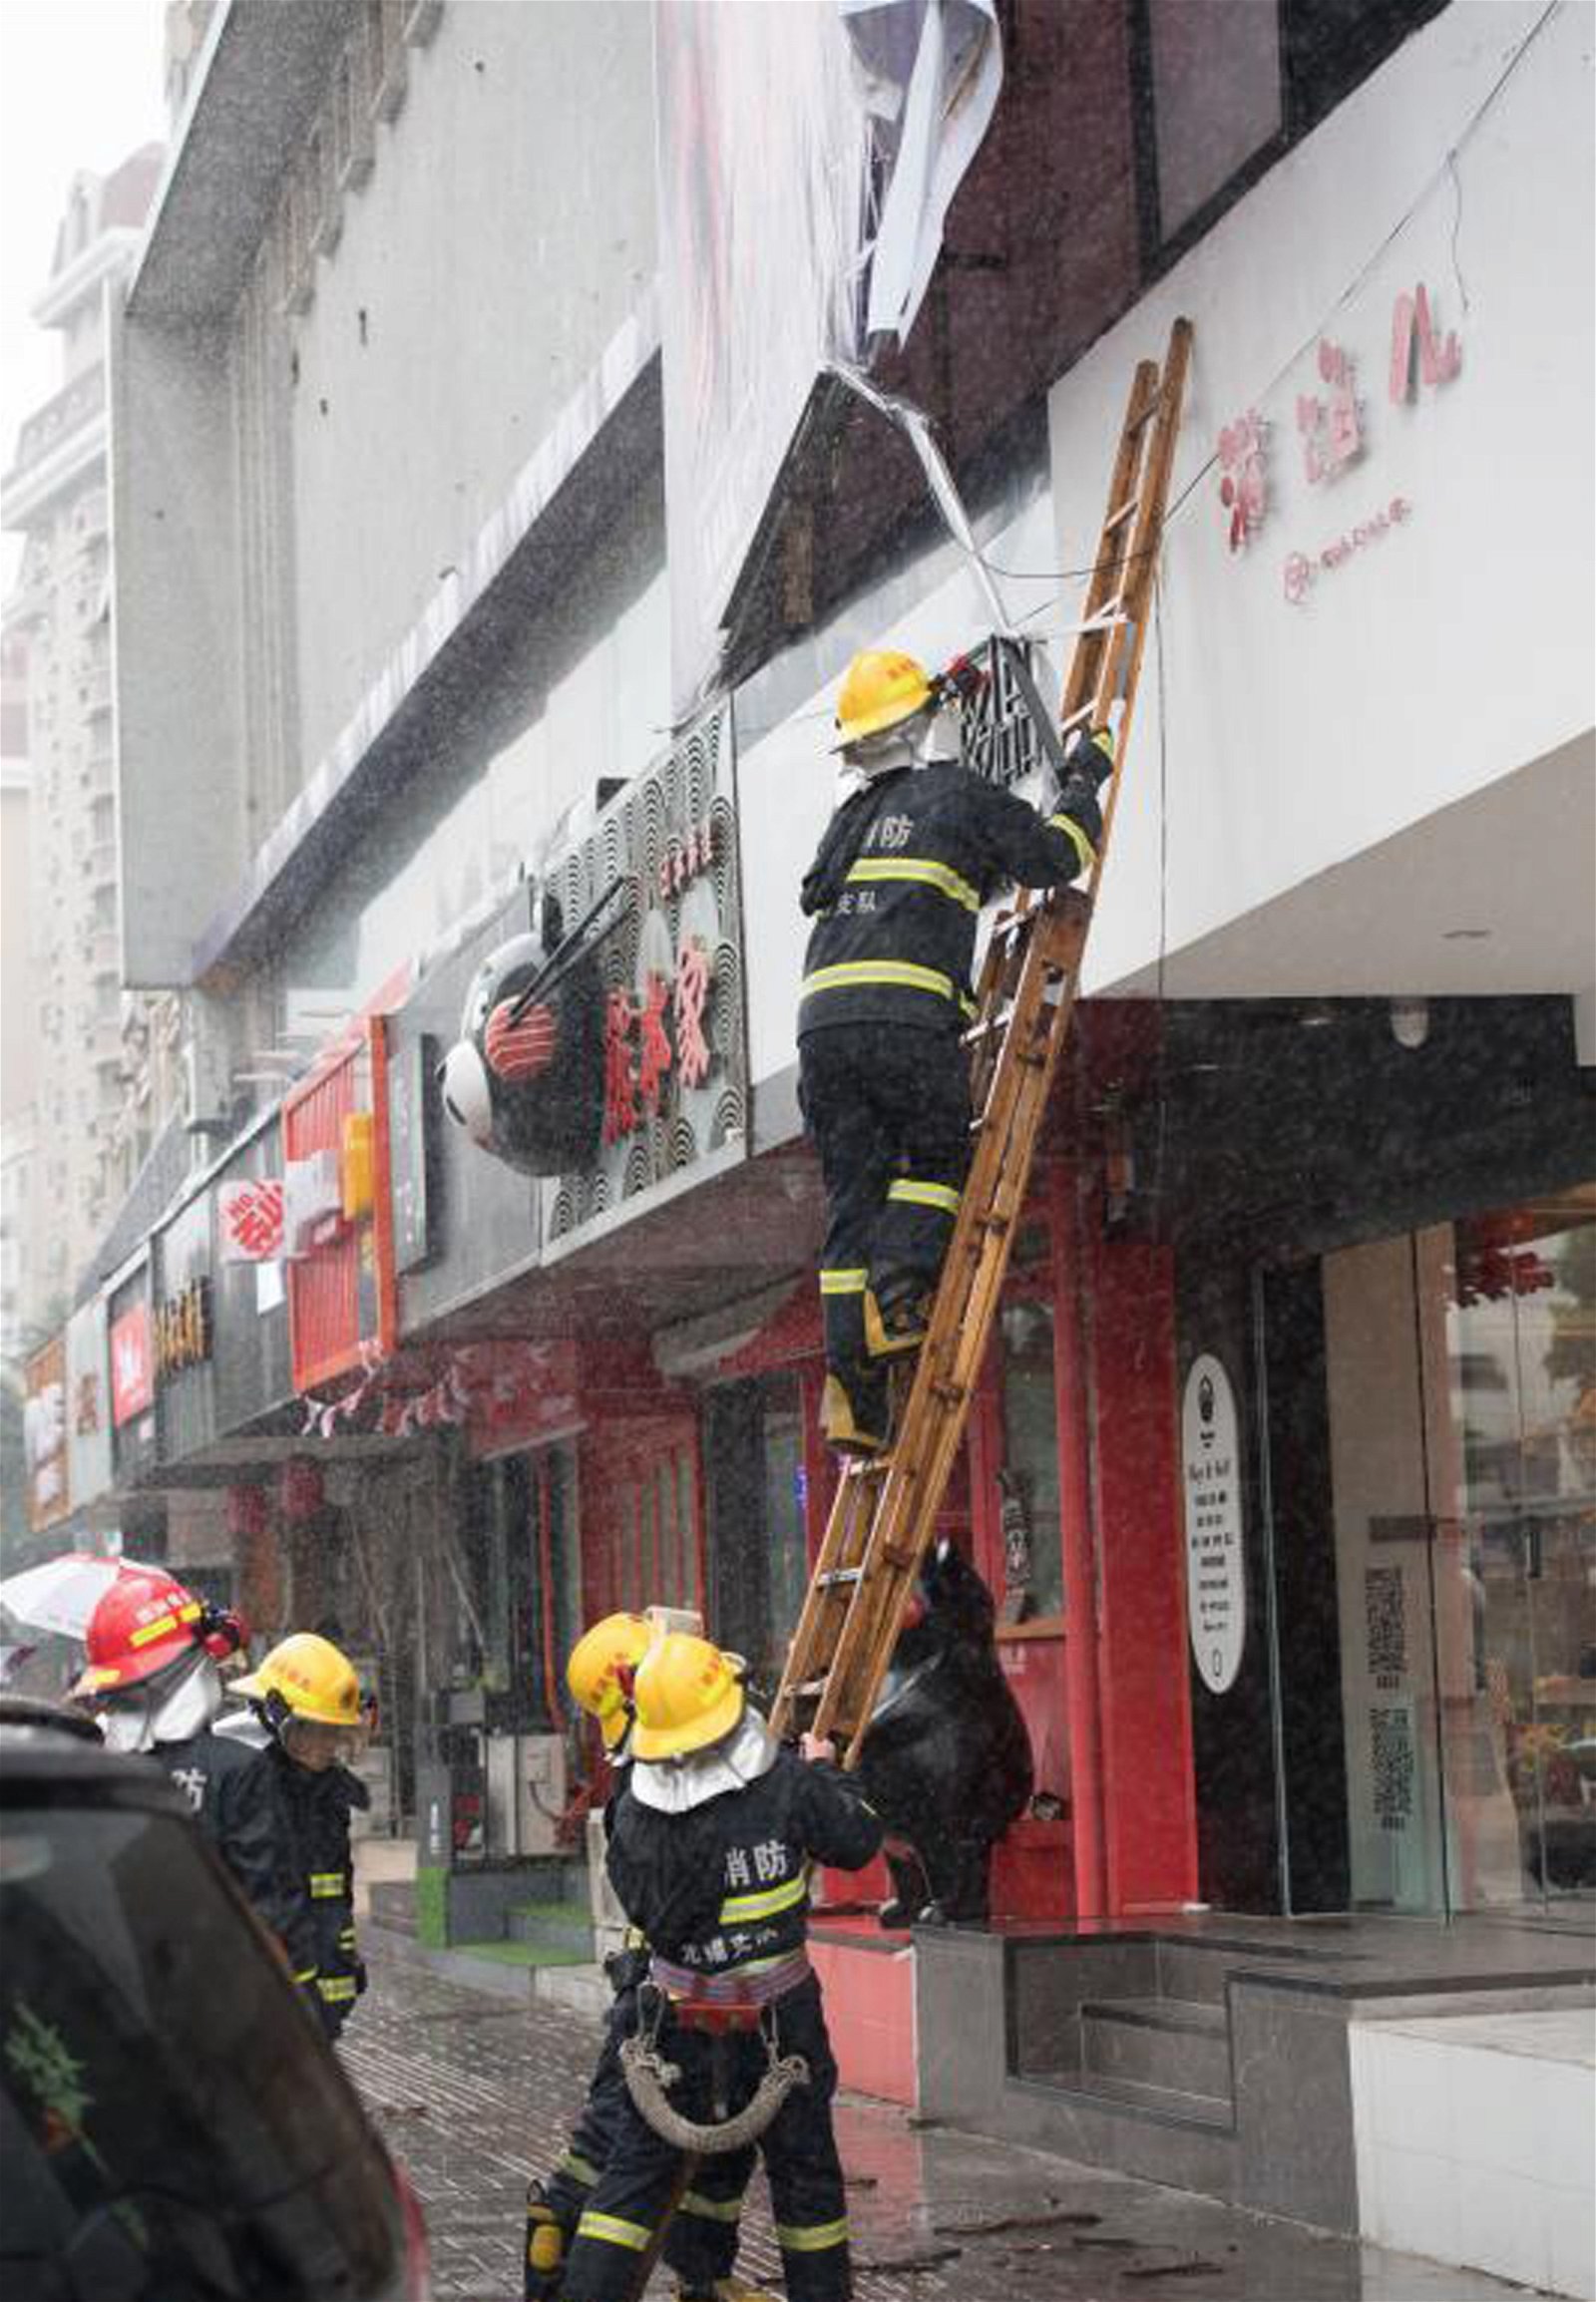 “安比”逐渐靠近上海，比邻的江苏省也受影响。无锡市崇宁路上一户商家2楼的大型广告牌，被大风吹脱，一侧摇摇欲坠。民警和消防队员赶到现场拆下该广告牌，避免广告牌倒下造成意外。